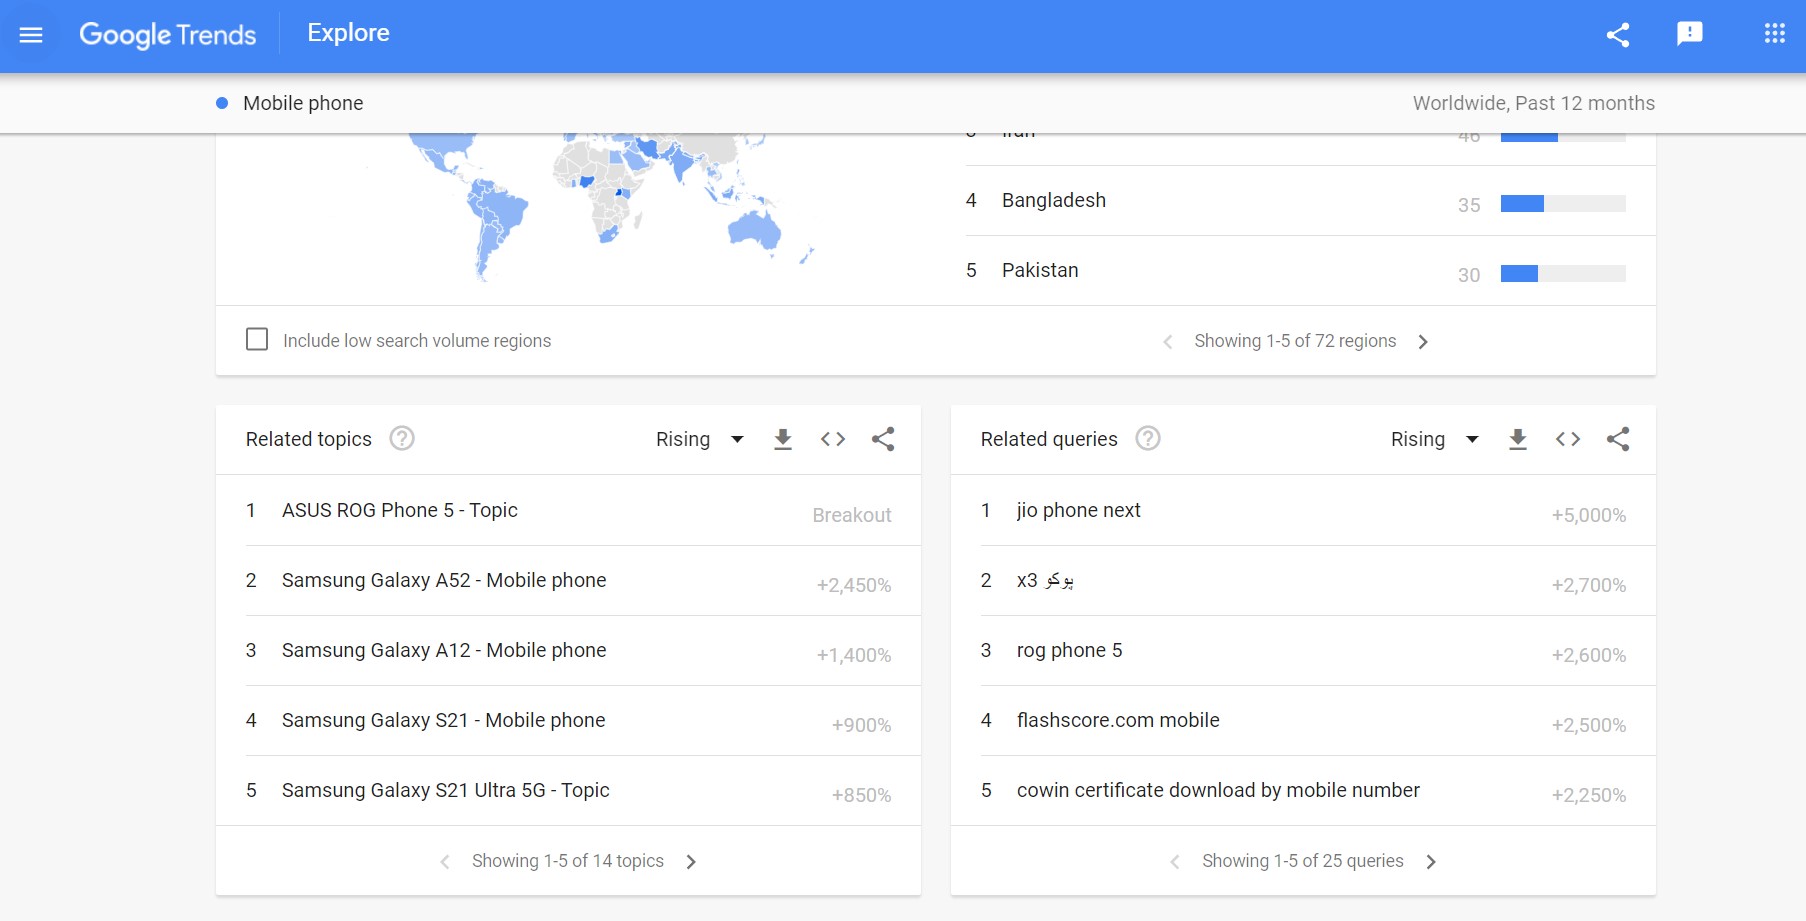 Affiliate marketing niche - Google Trends Report